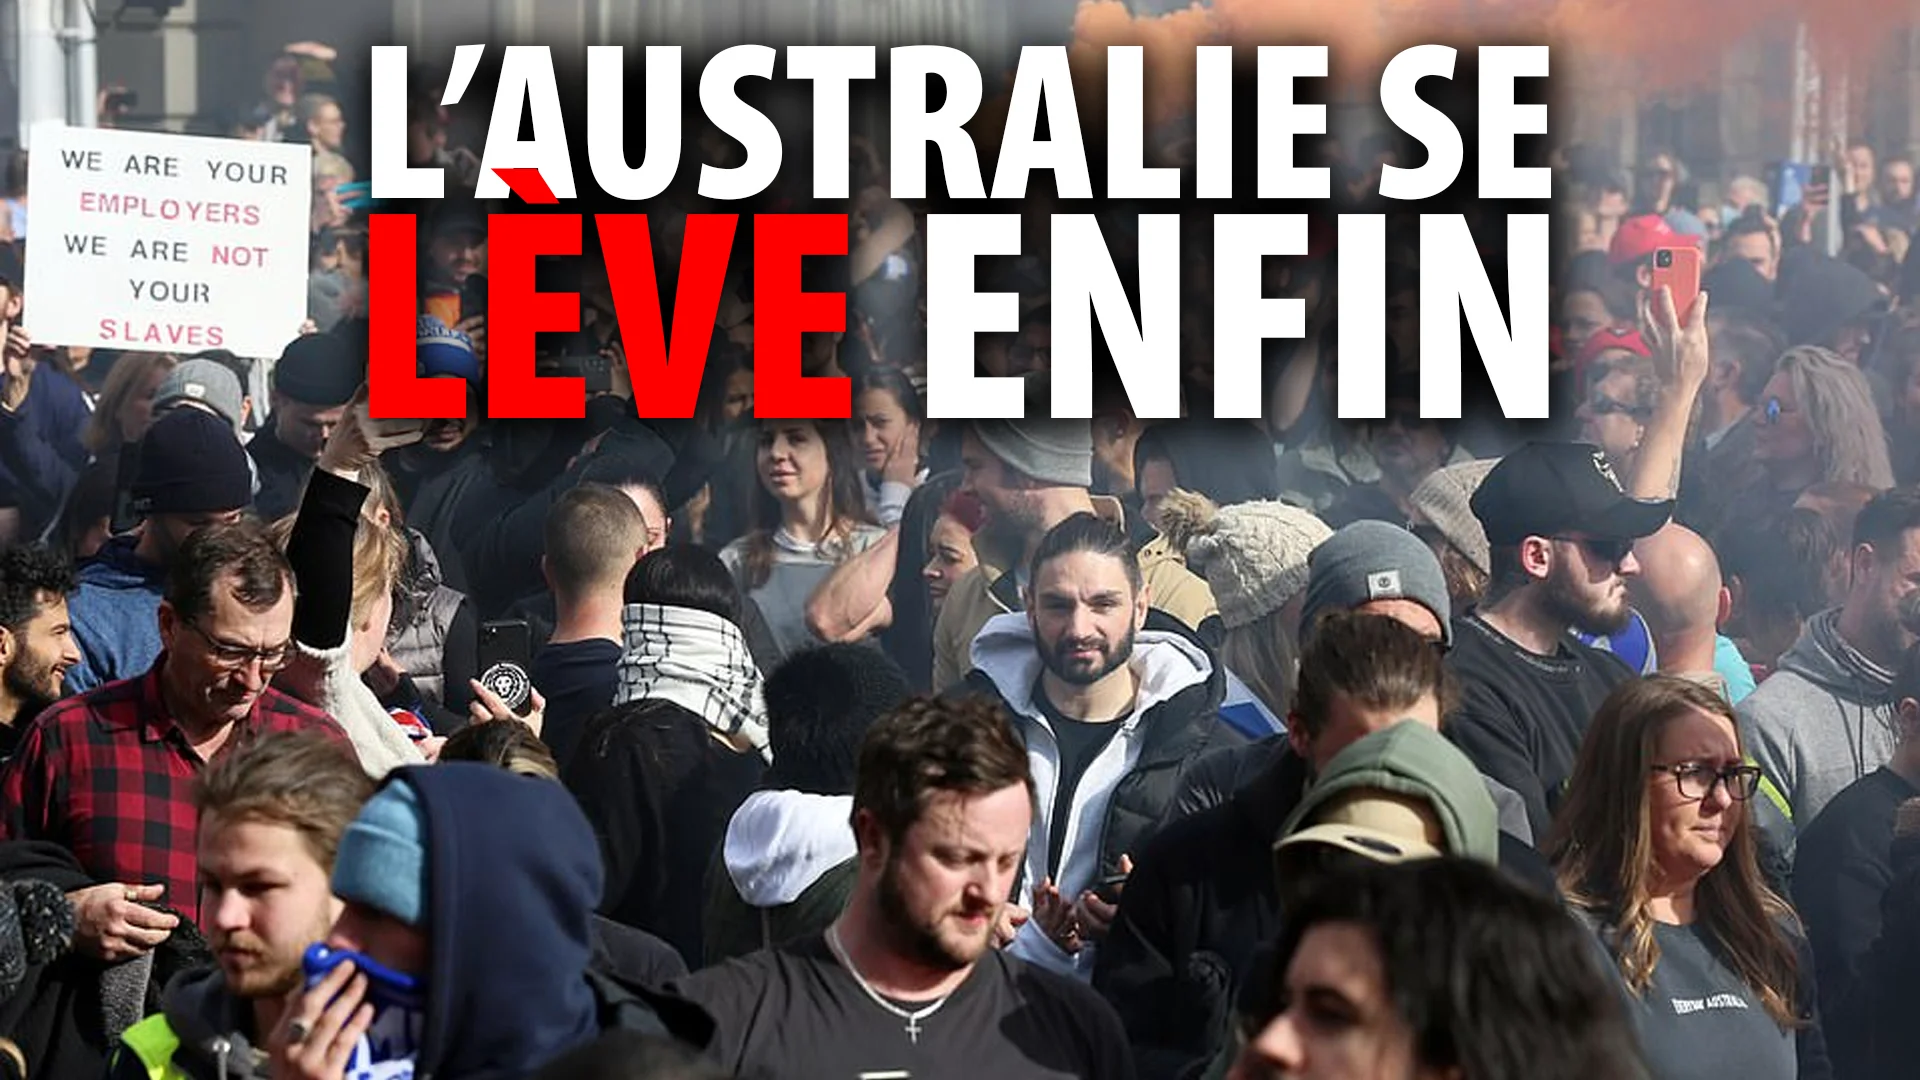 CONFINEMENT SANS FONDEMENT: L’AUSTRALIE SE LÈVE ENFIN!